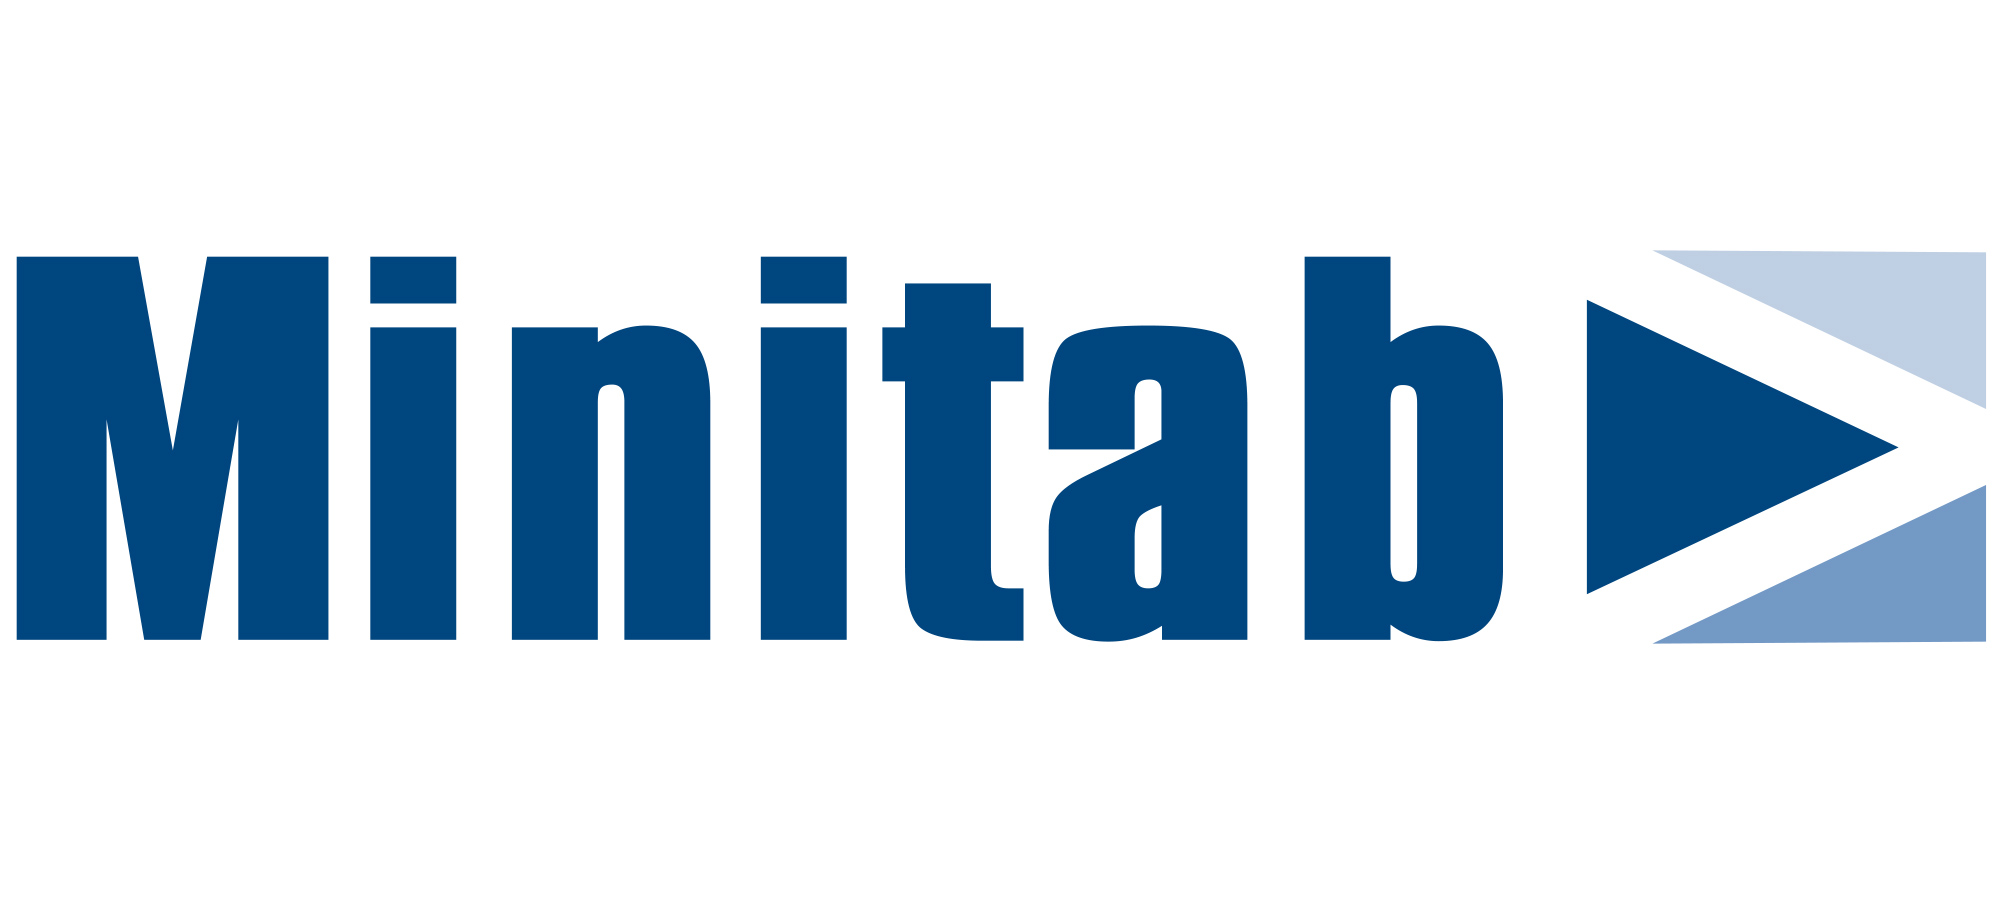 Logo Minitab